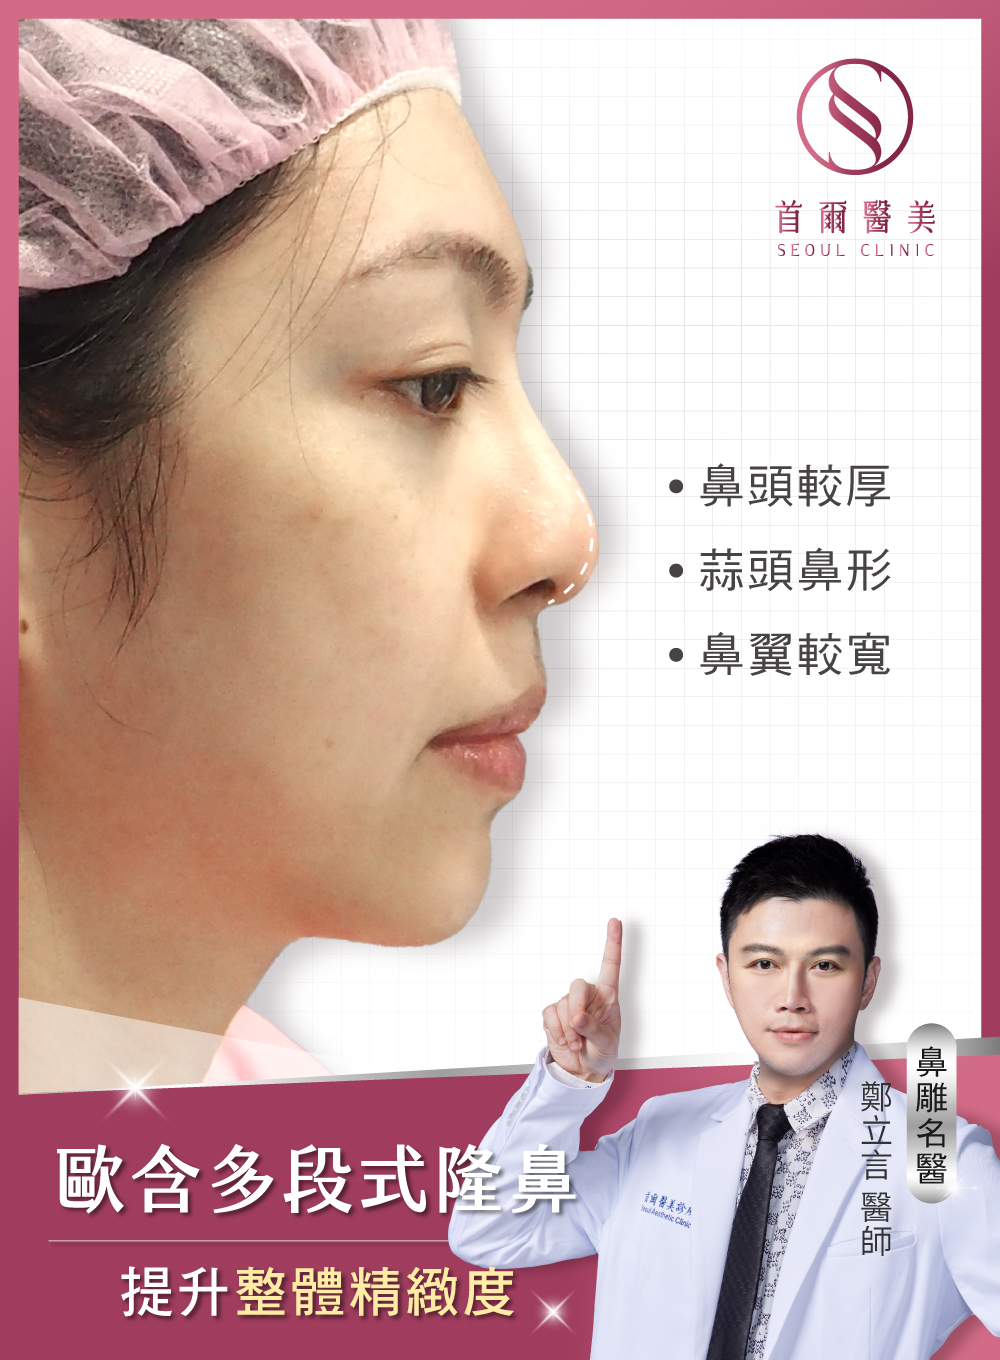 歐韓多段式隆鼻手術-提升鼻型精緻度-首爾醫美